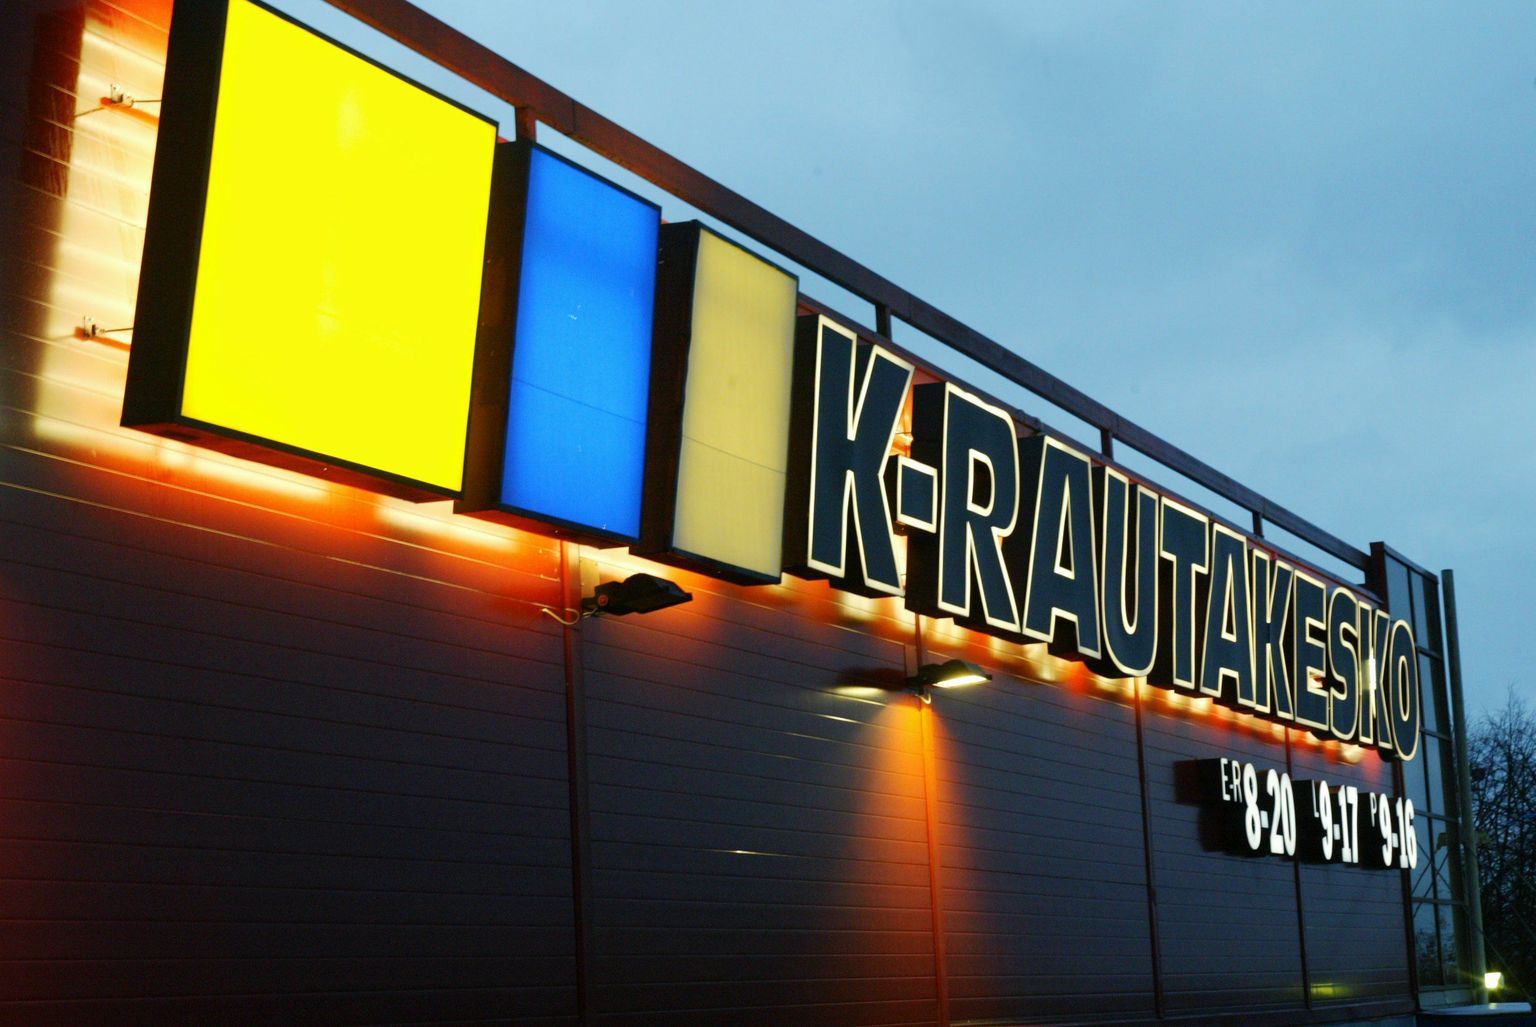 Rautakesko ja K-Rauta on tuntud kaubamärgid ka eestlaste jaoks.